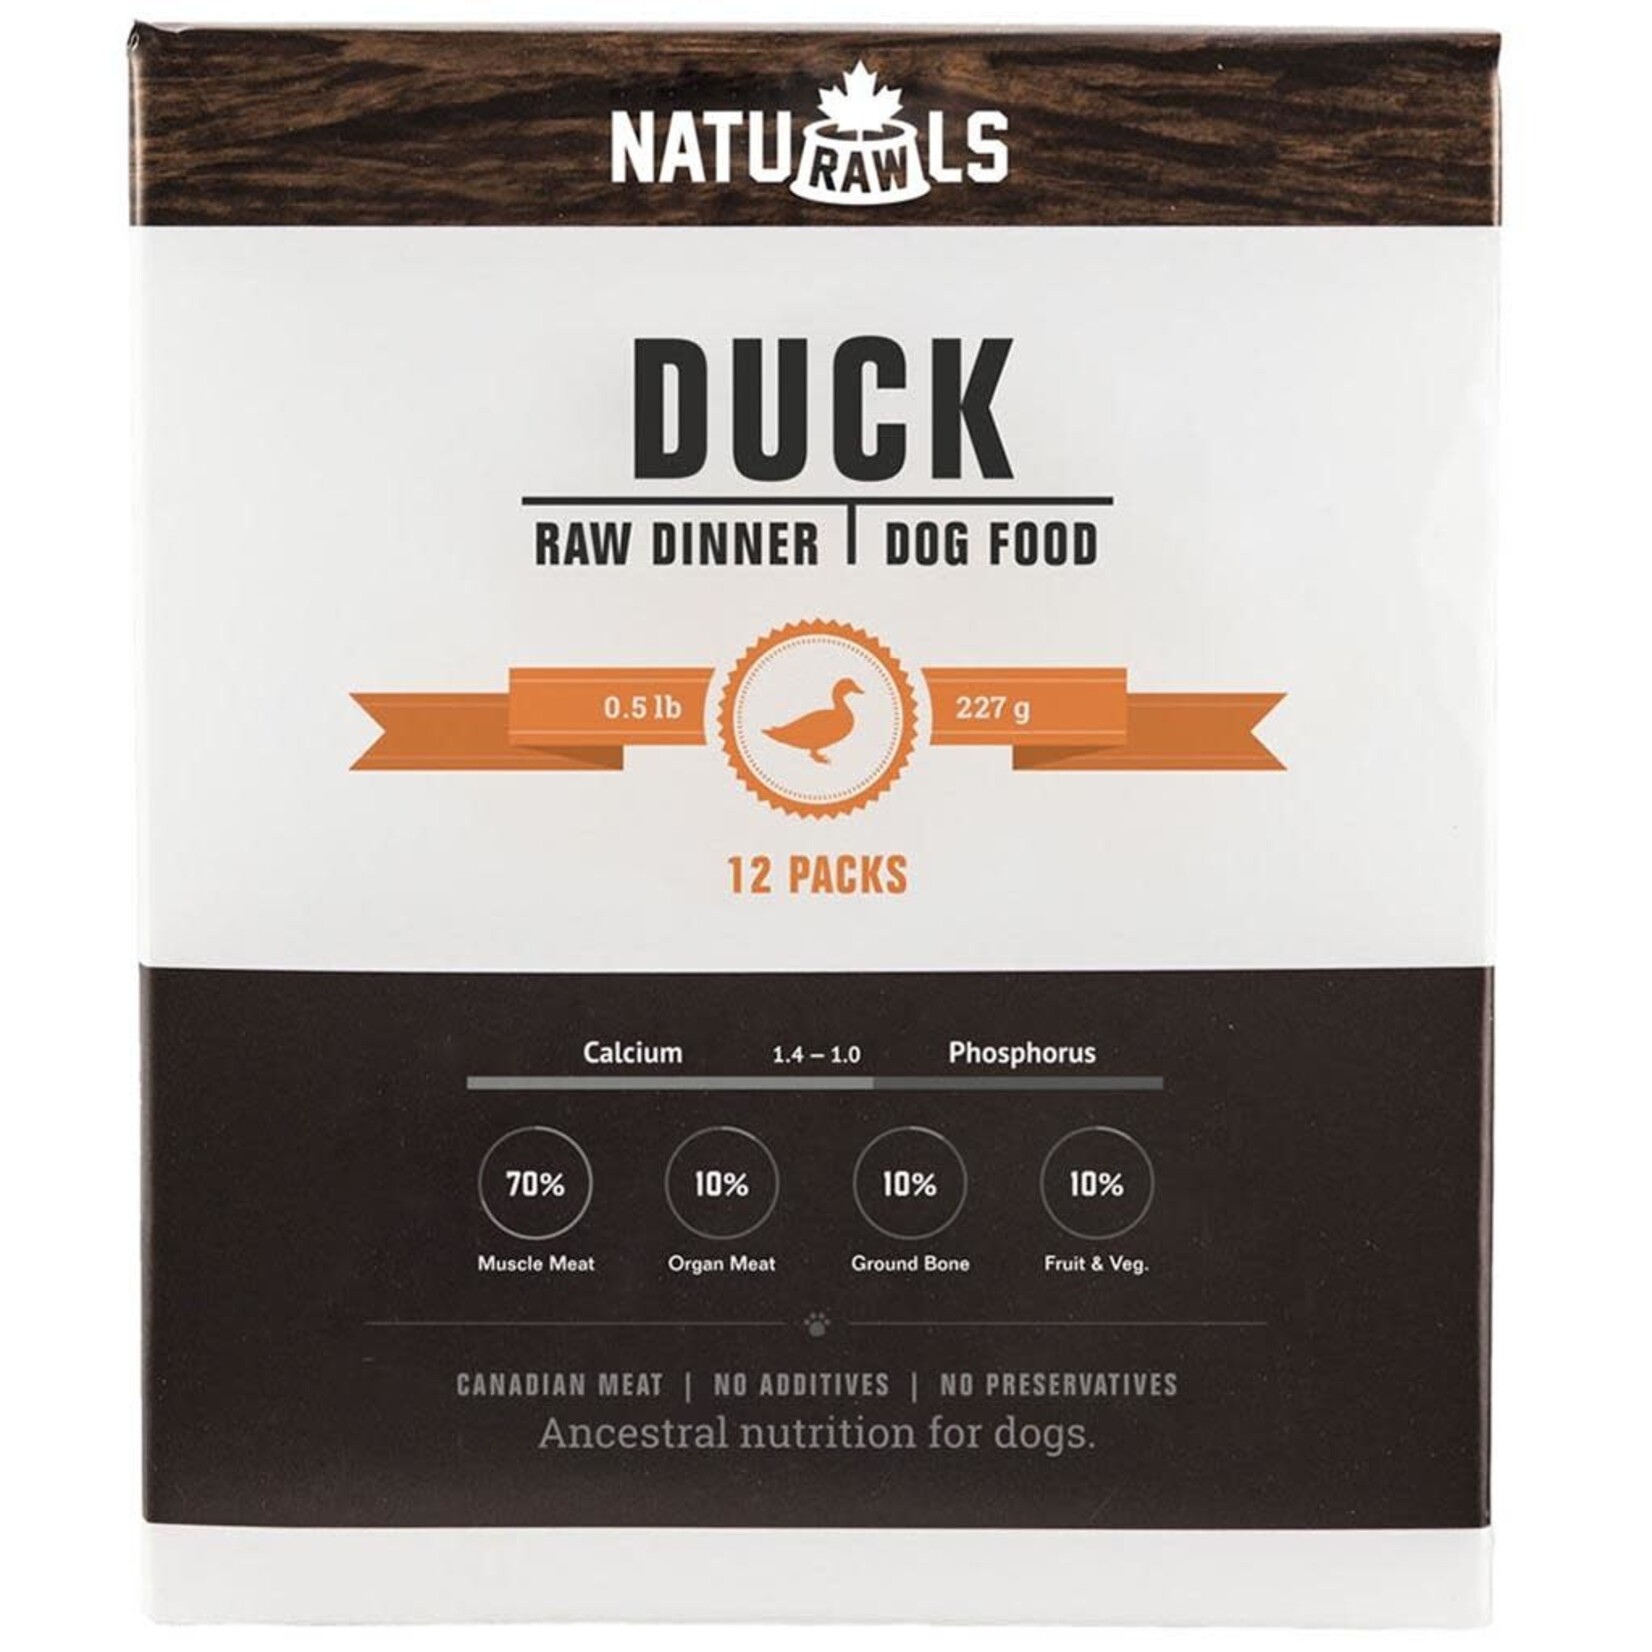 Naturawls Naturawls Raw Duck